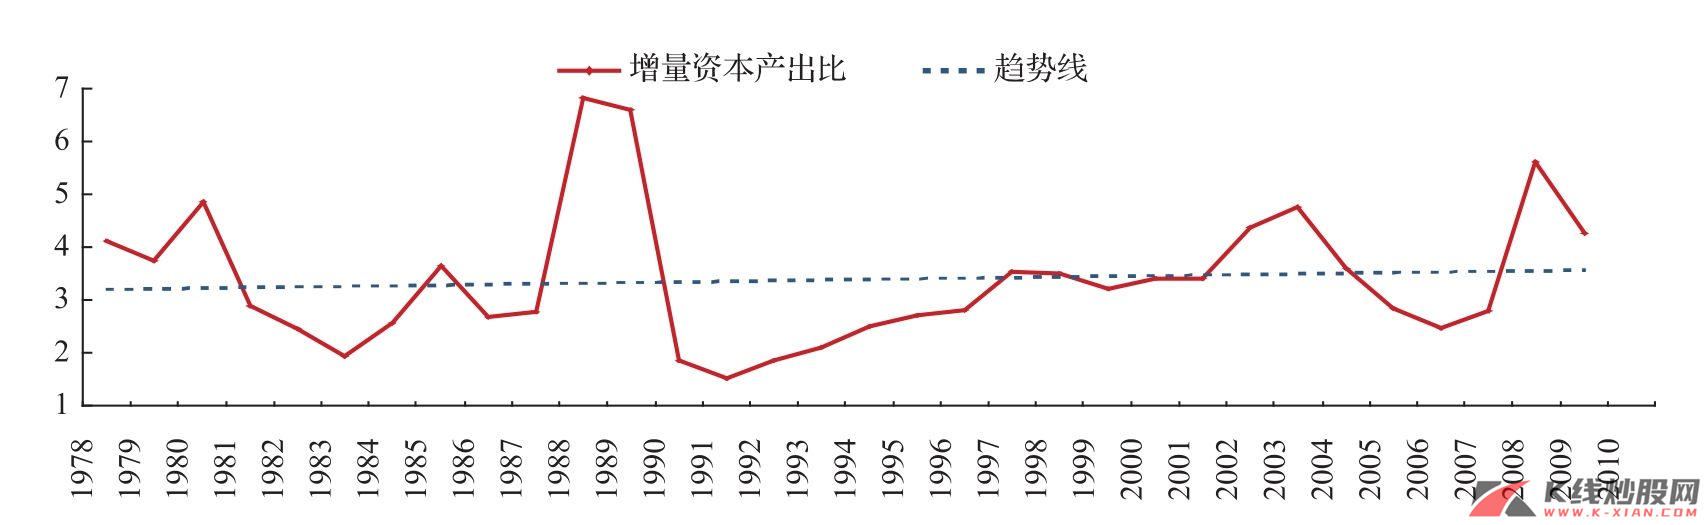 中国的增量资本产出比